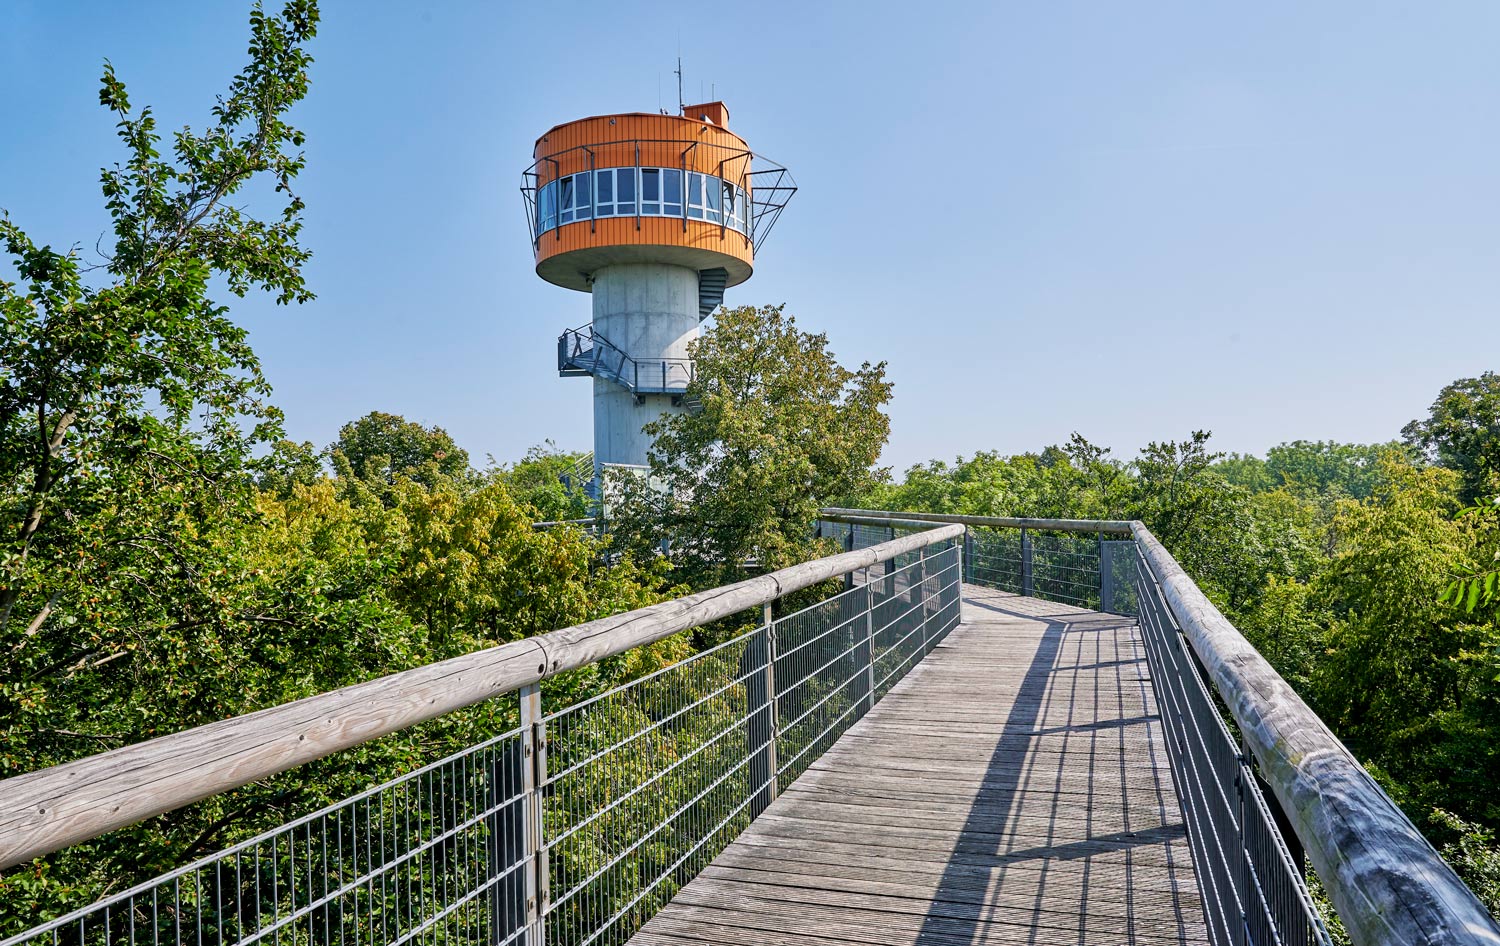 Toren van boomkroonpark nationalpark Hainich